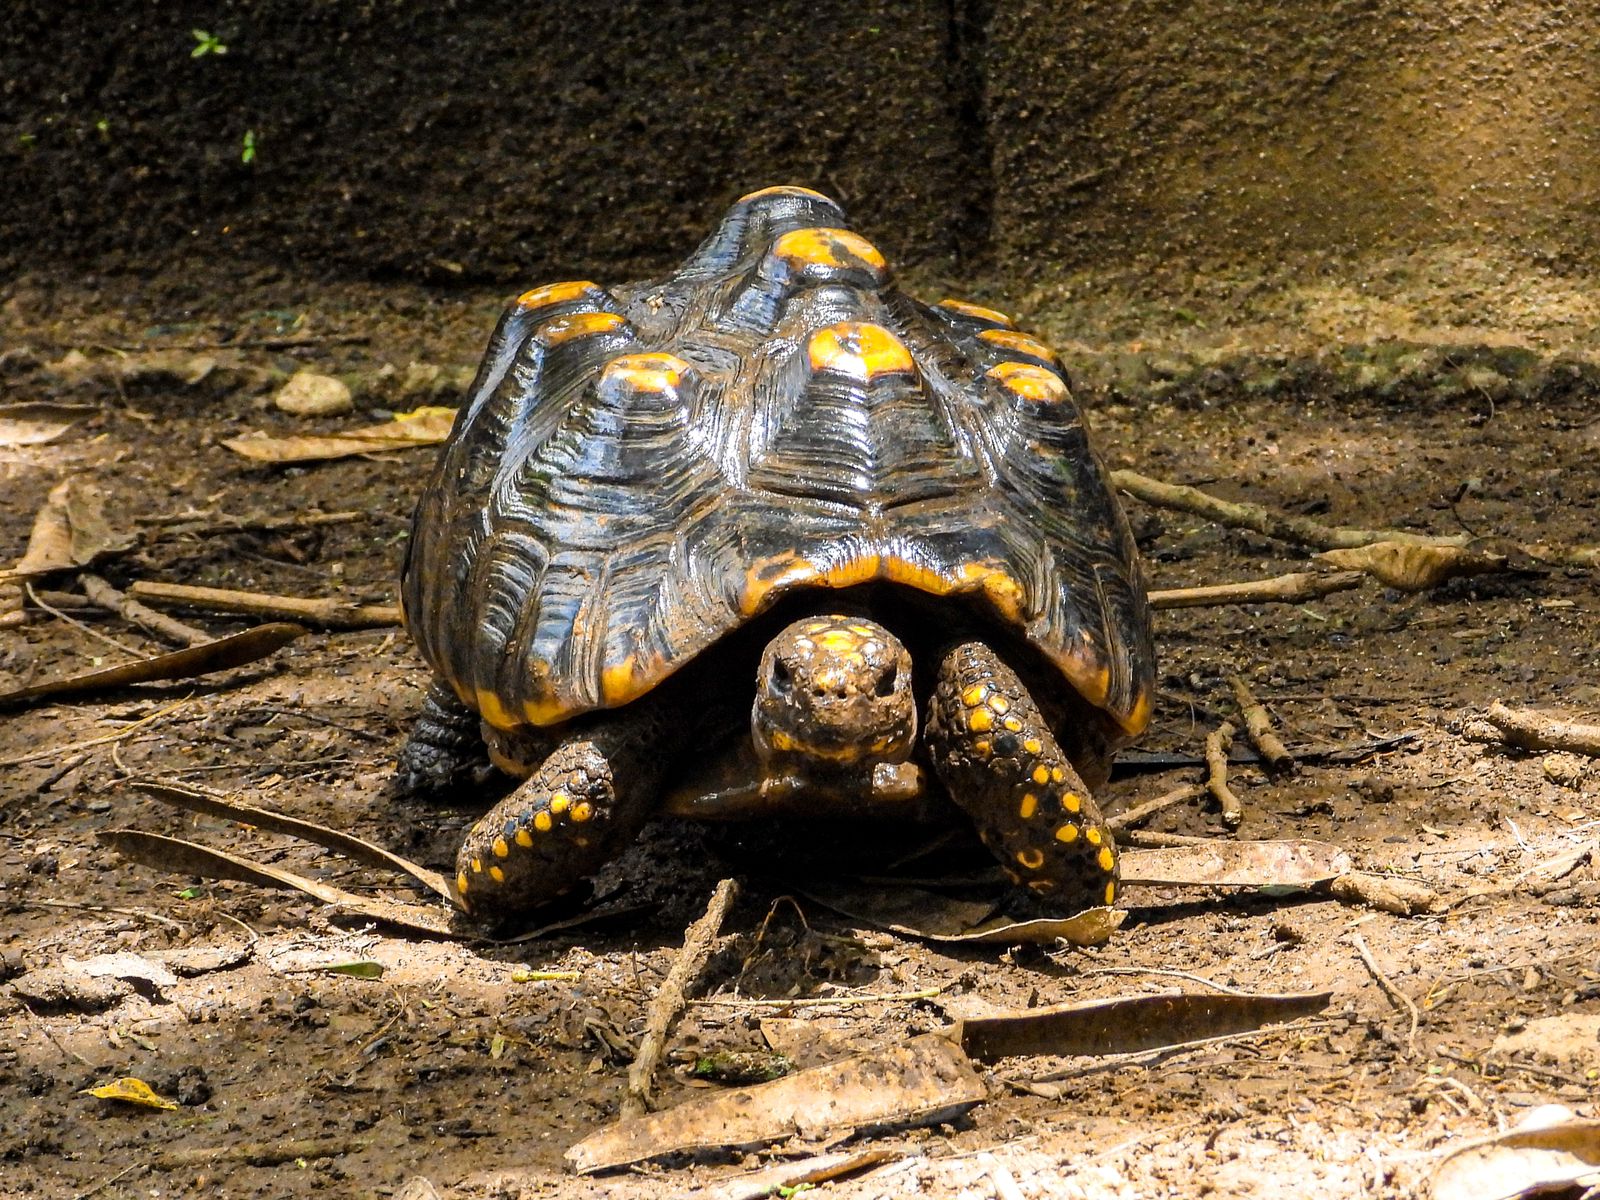 Preocupan los índices de piramidismo en las tortugas que son víctima de tráfico ilegal de fauna